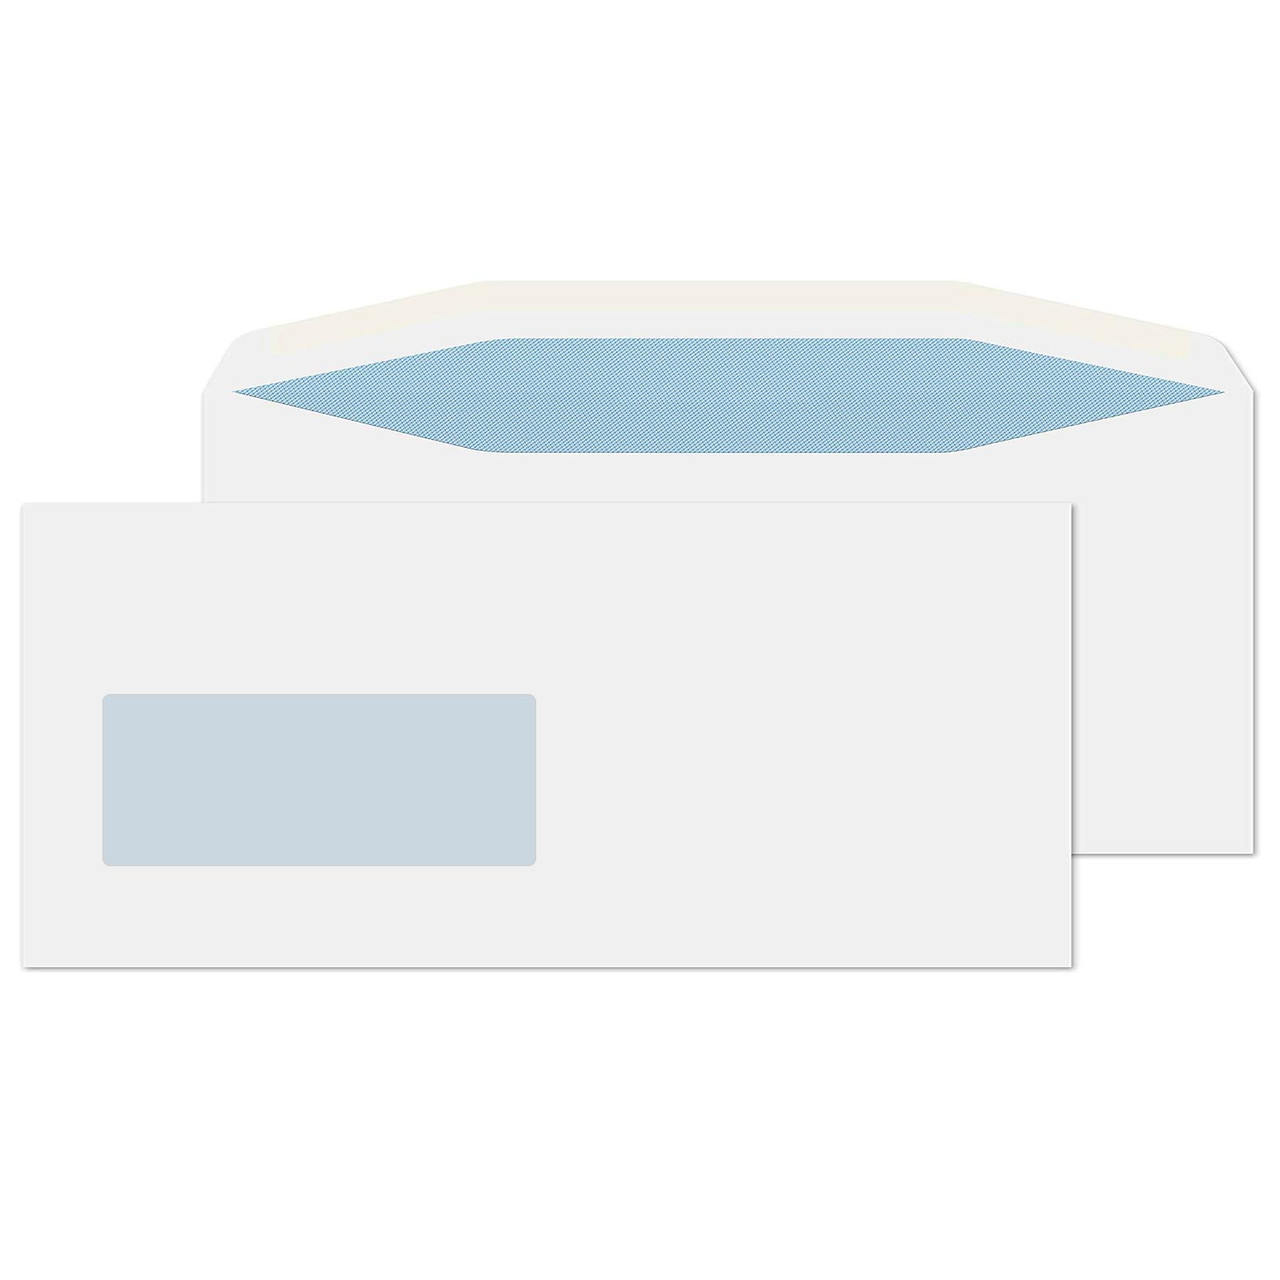 Folder Inserter Envelopes - DL Window - 1000pcs